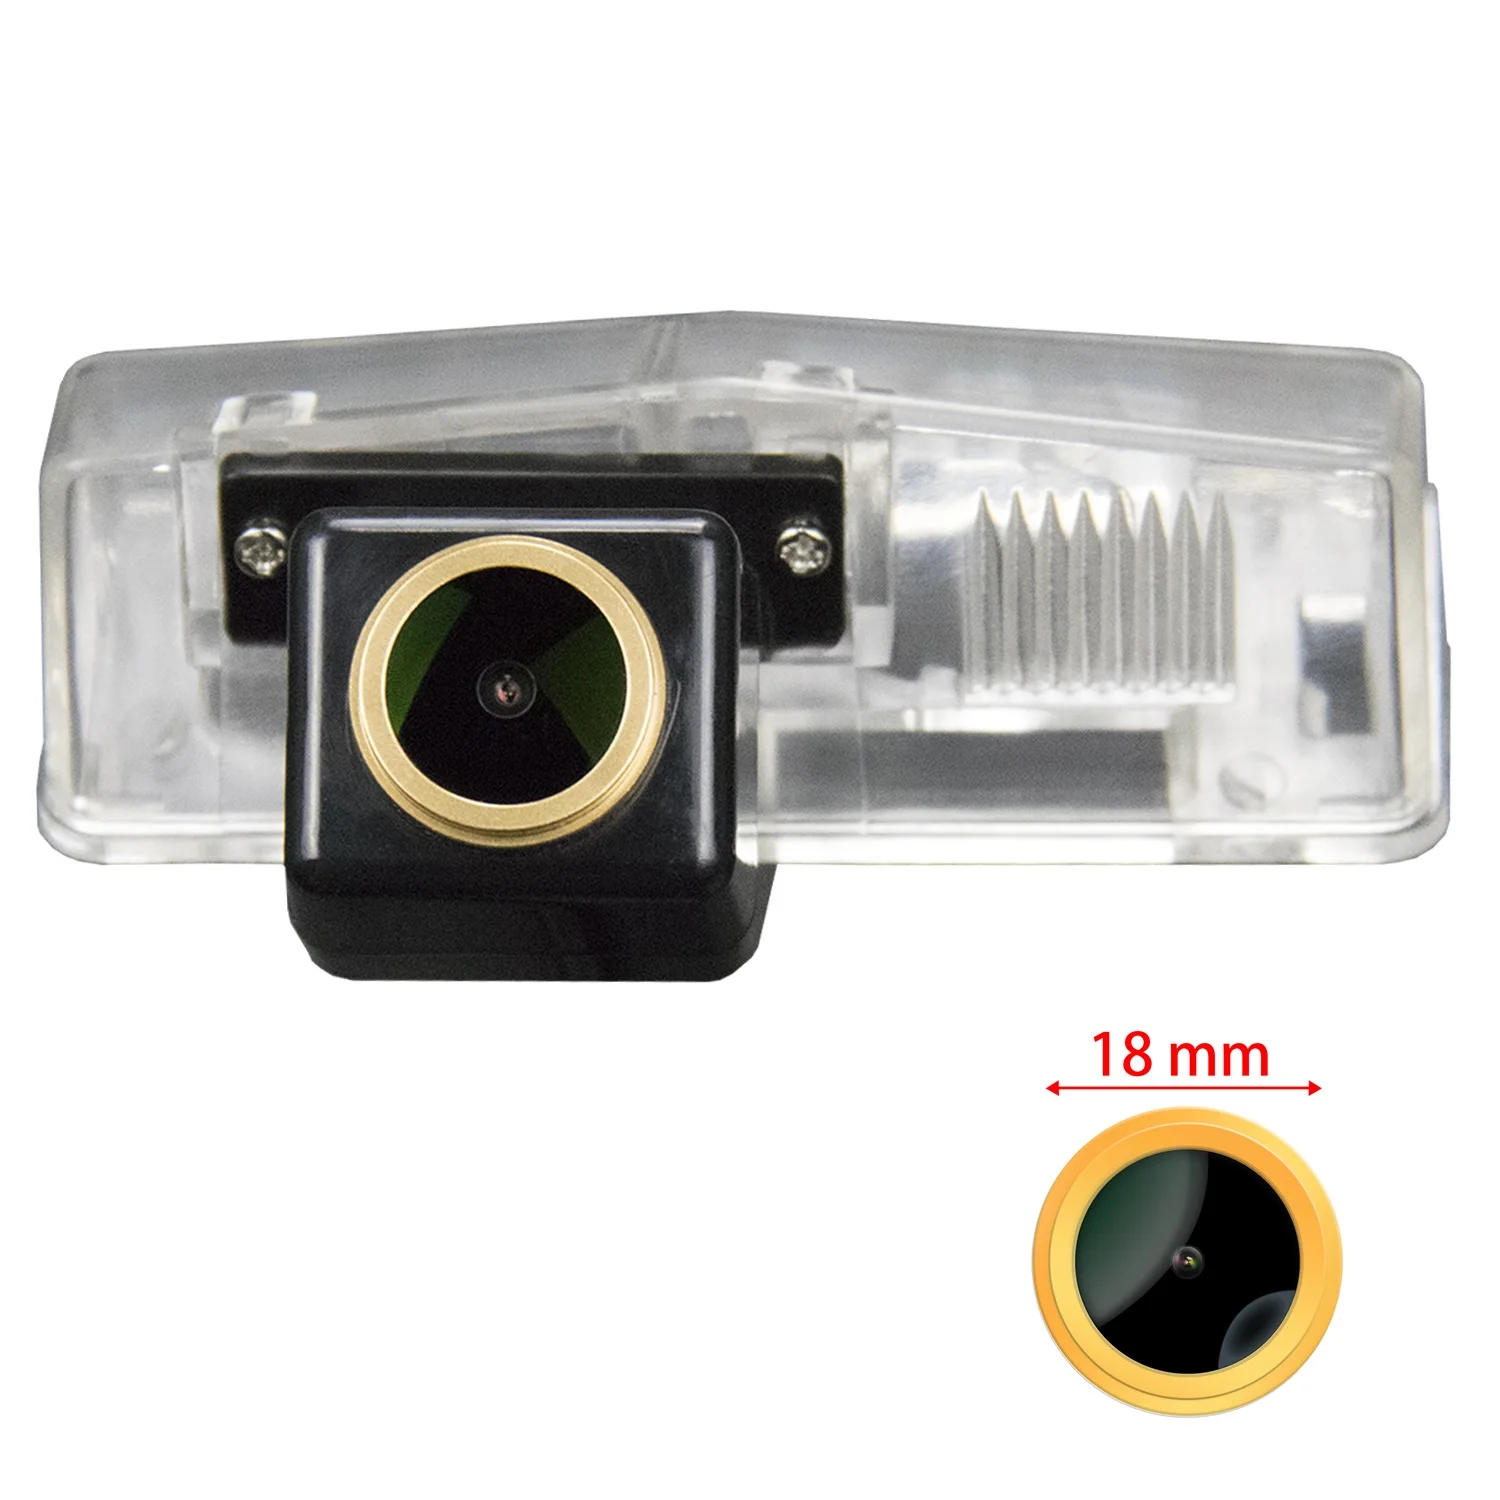 

Misayaee HD Car Rear View Parking Reverse Camera for Toyota RAV4 Venza Matrix Prius CT200H 2013- 2015 Night Vision Waterproof